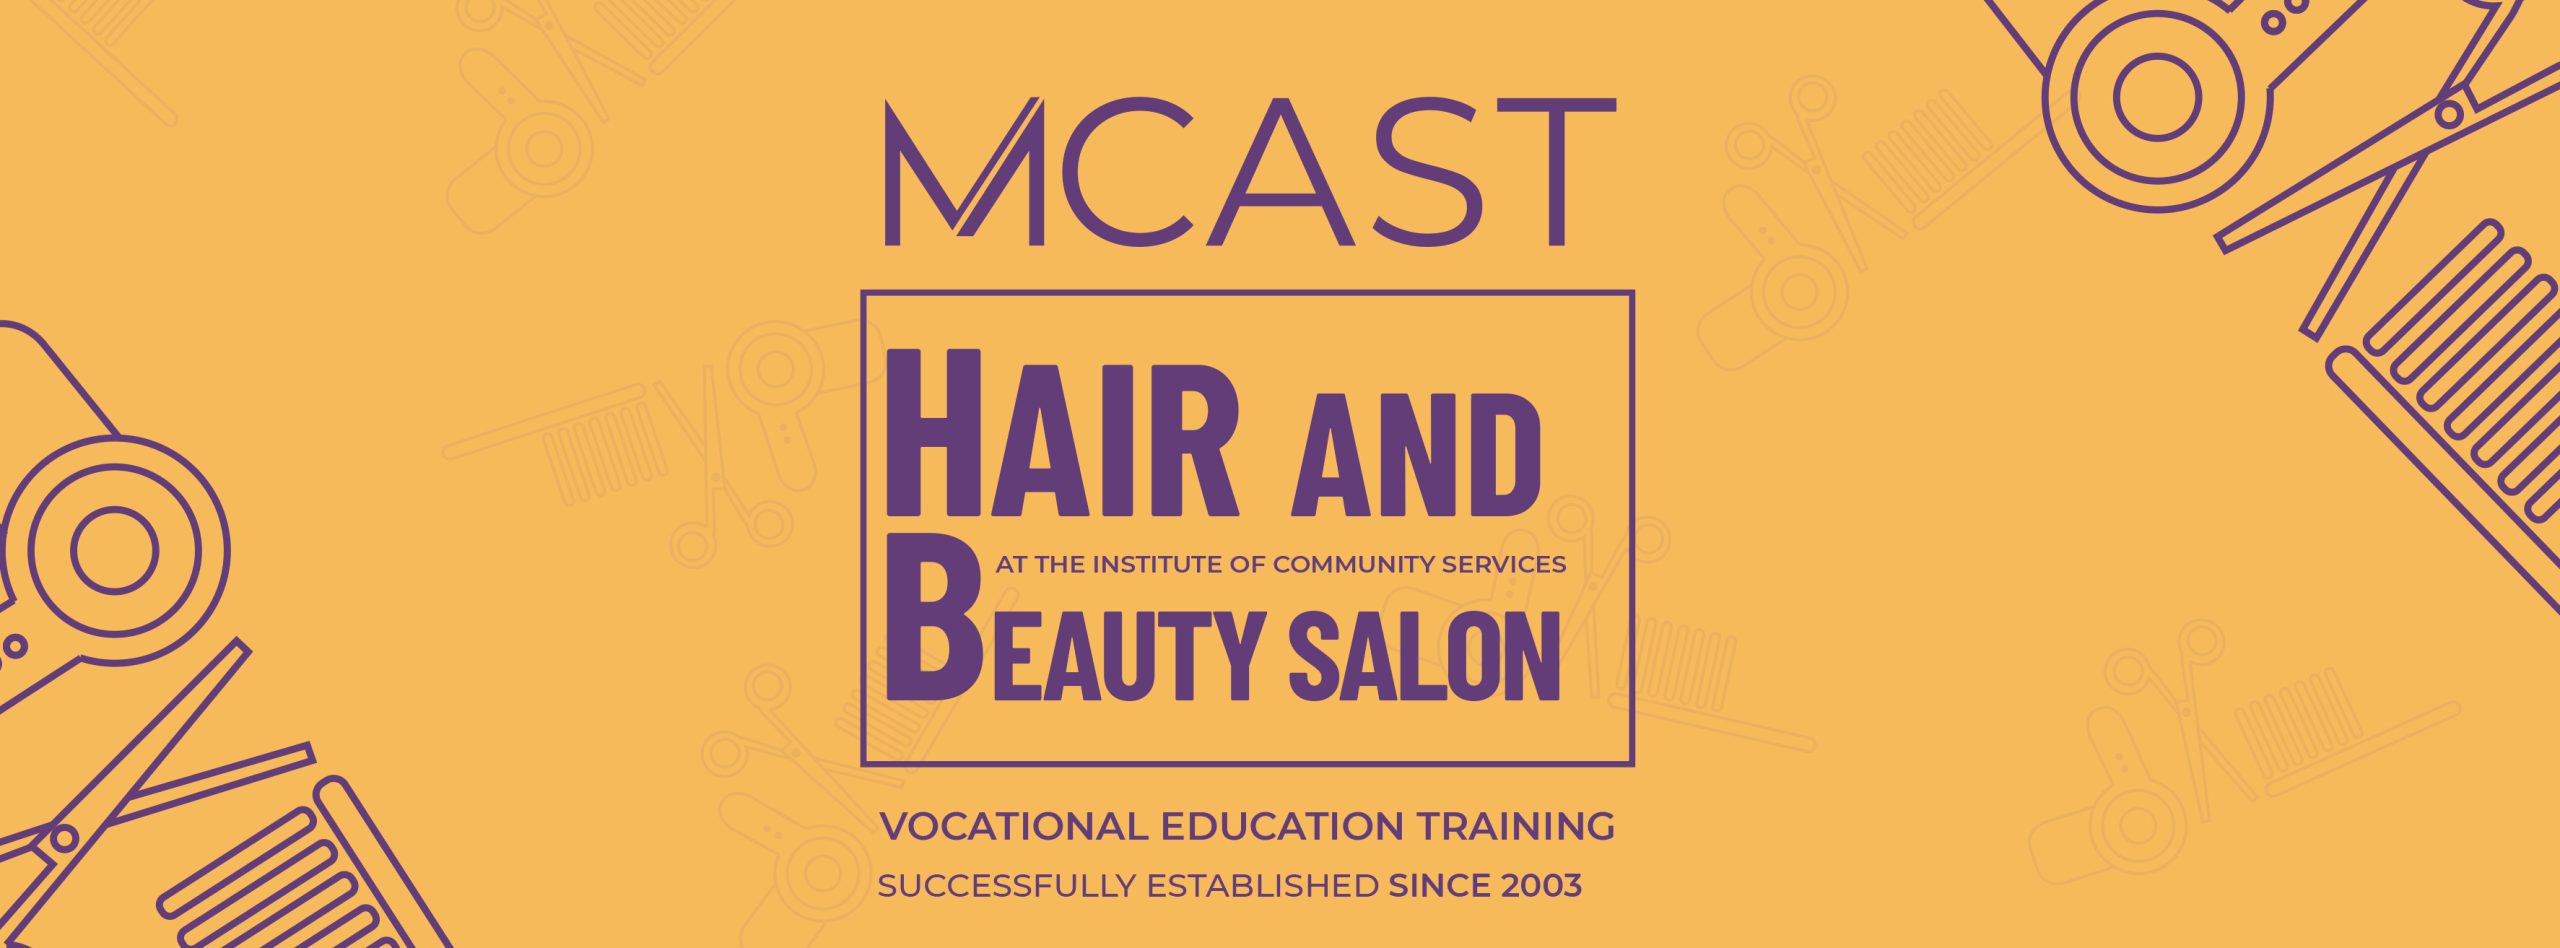 Hair & Beauty Salon – MCAST